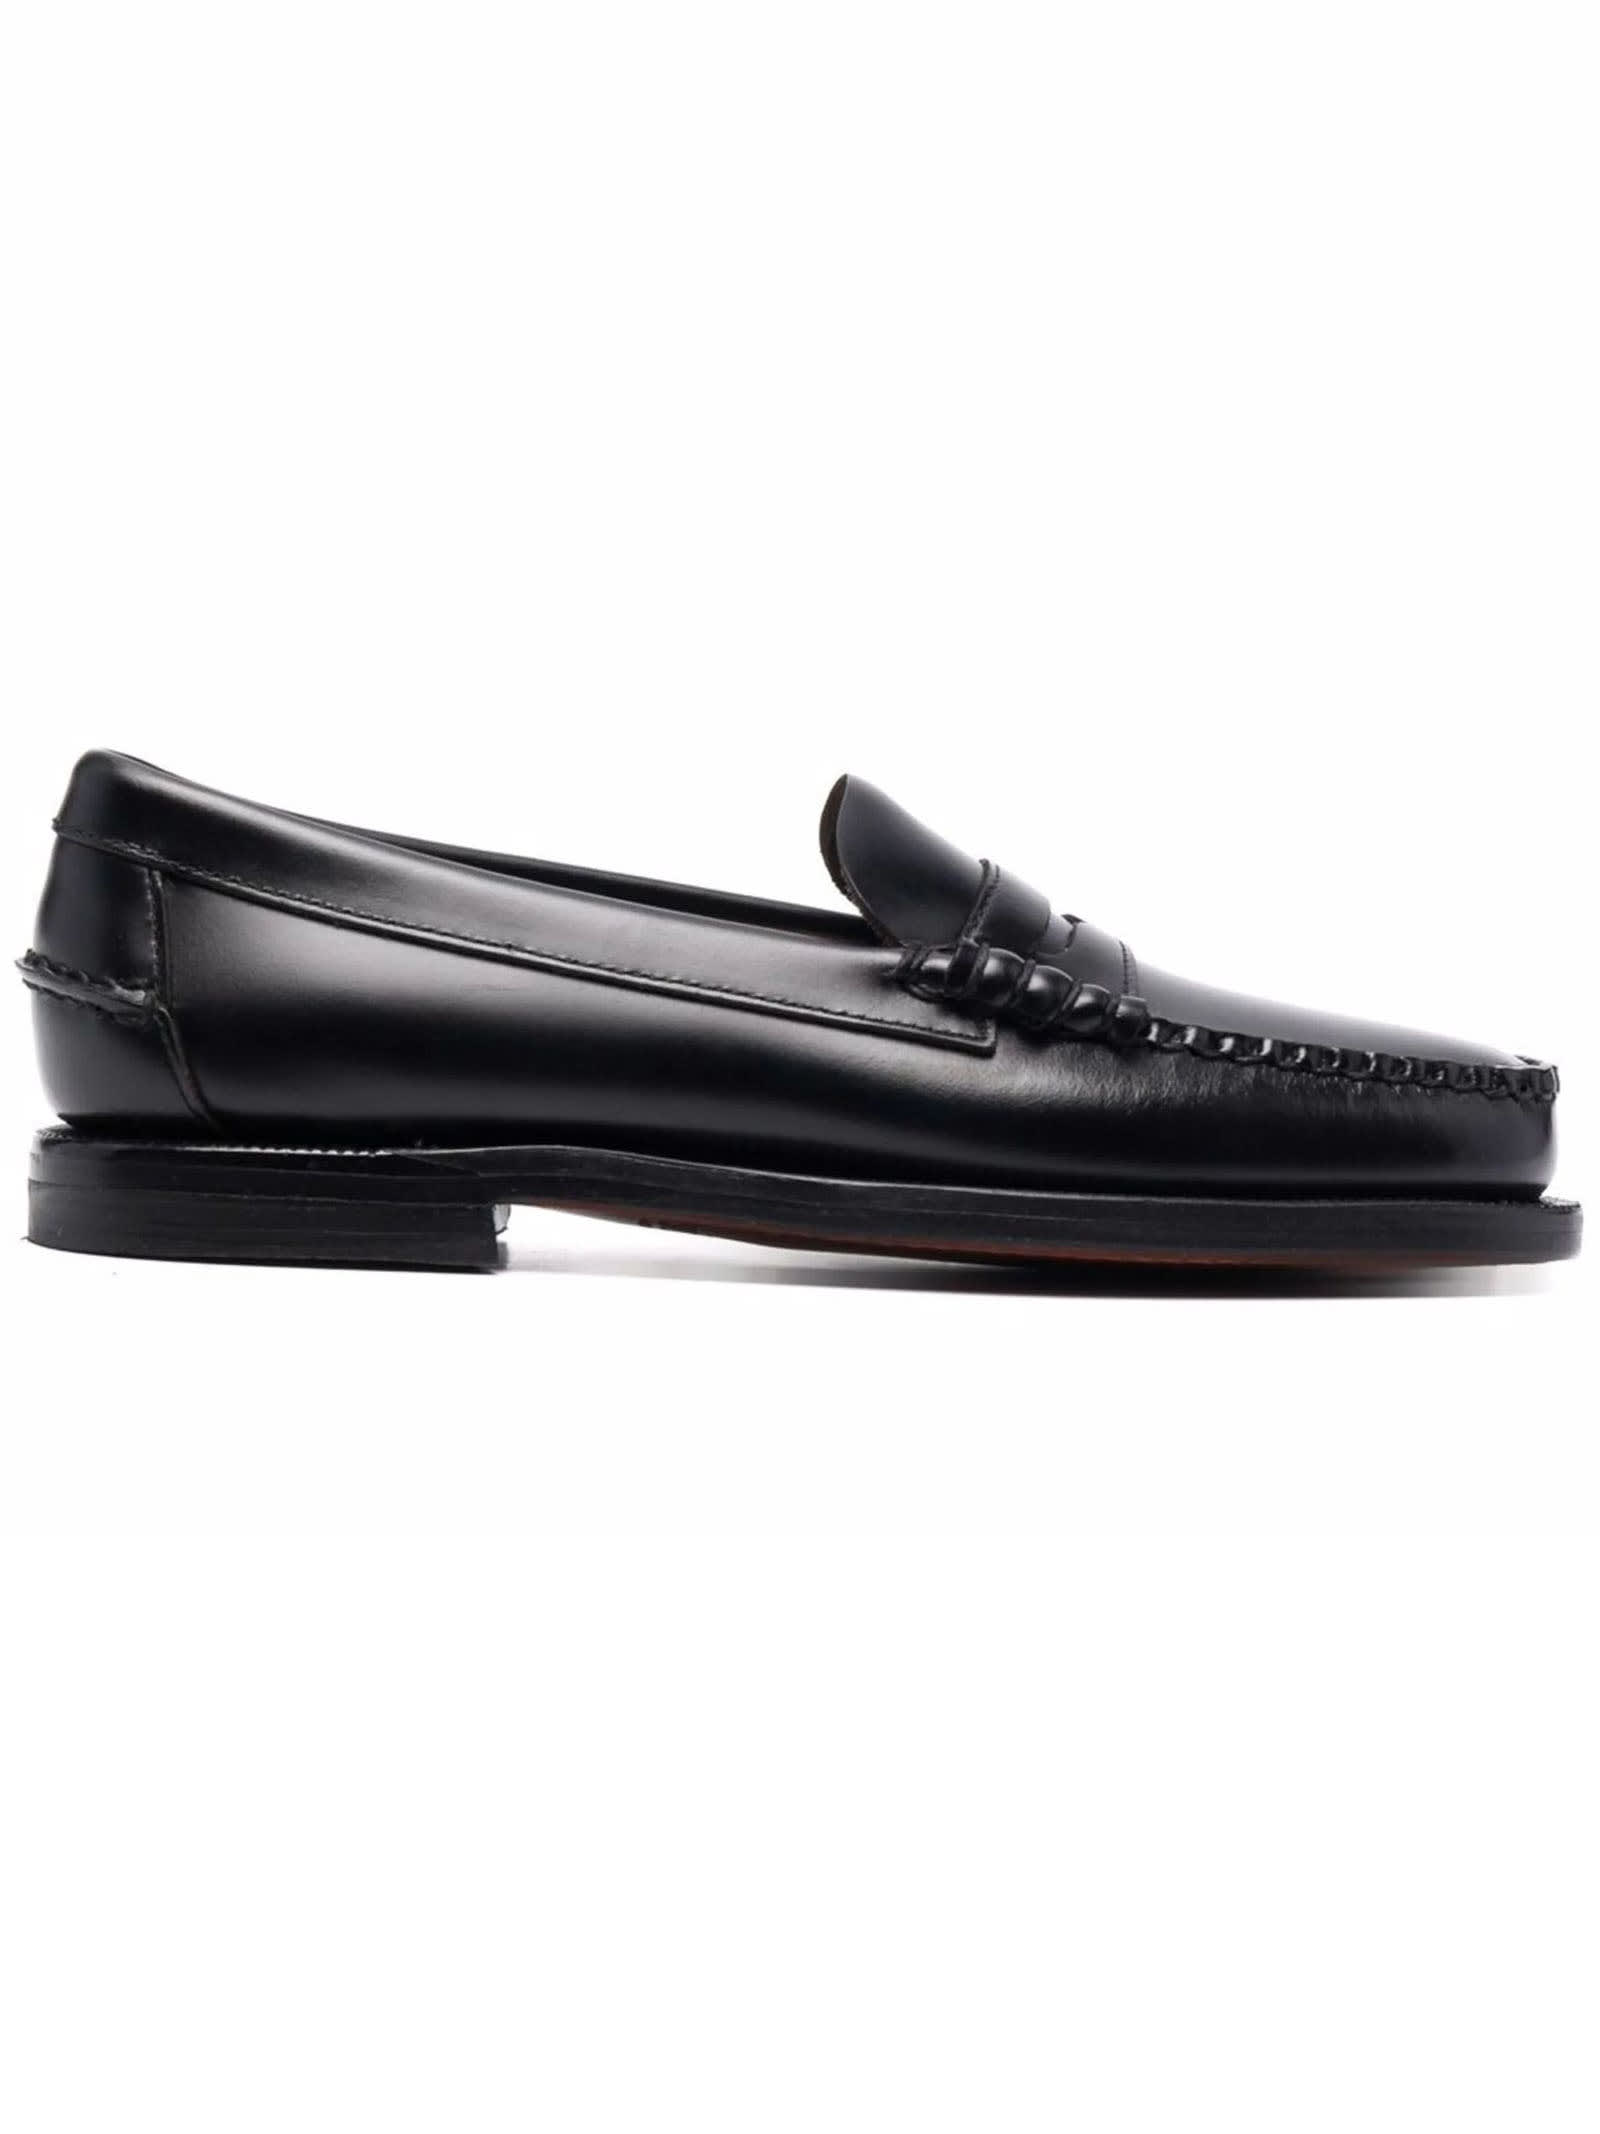 Shop Sebago Black Leather Loafers